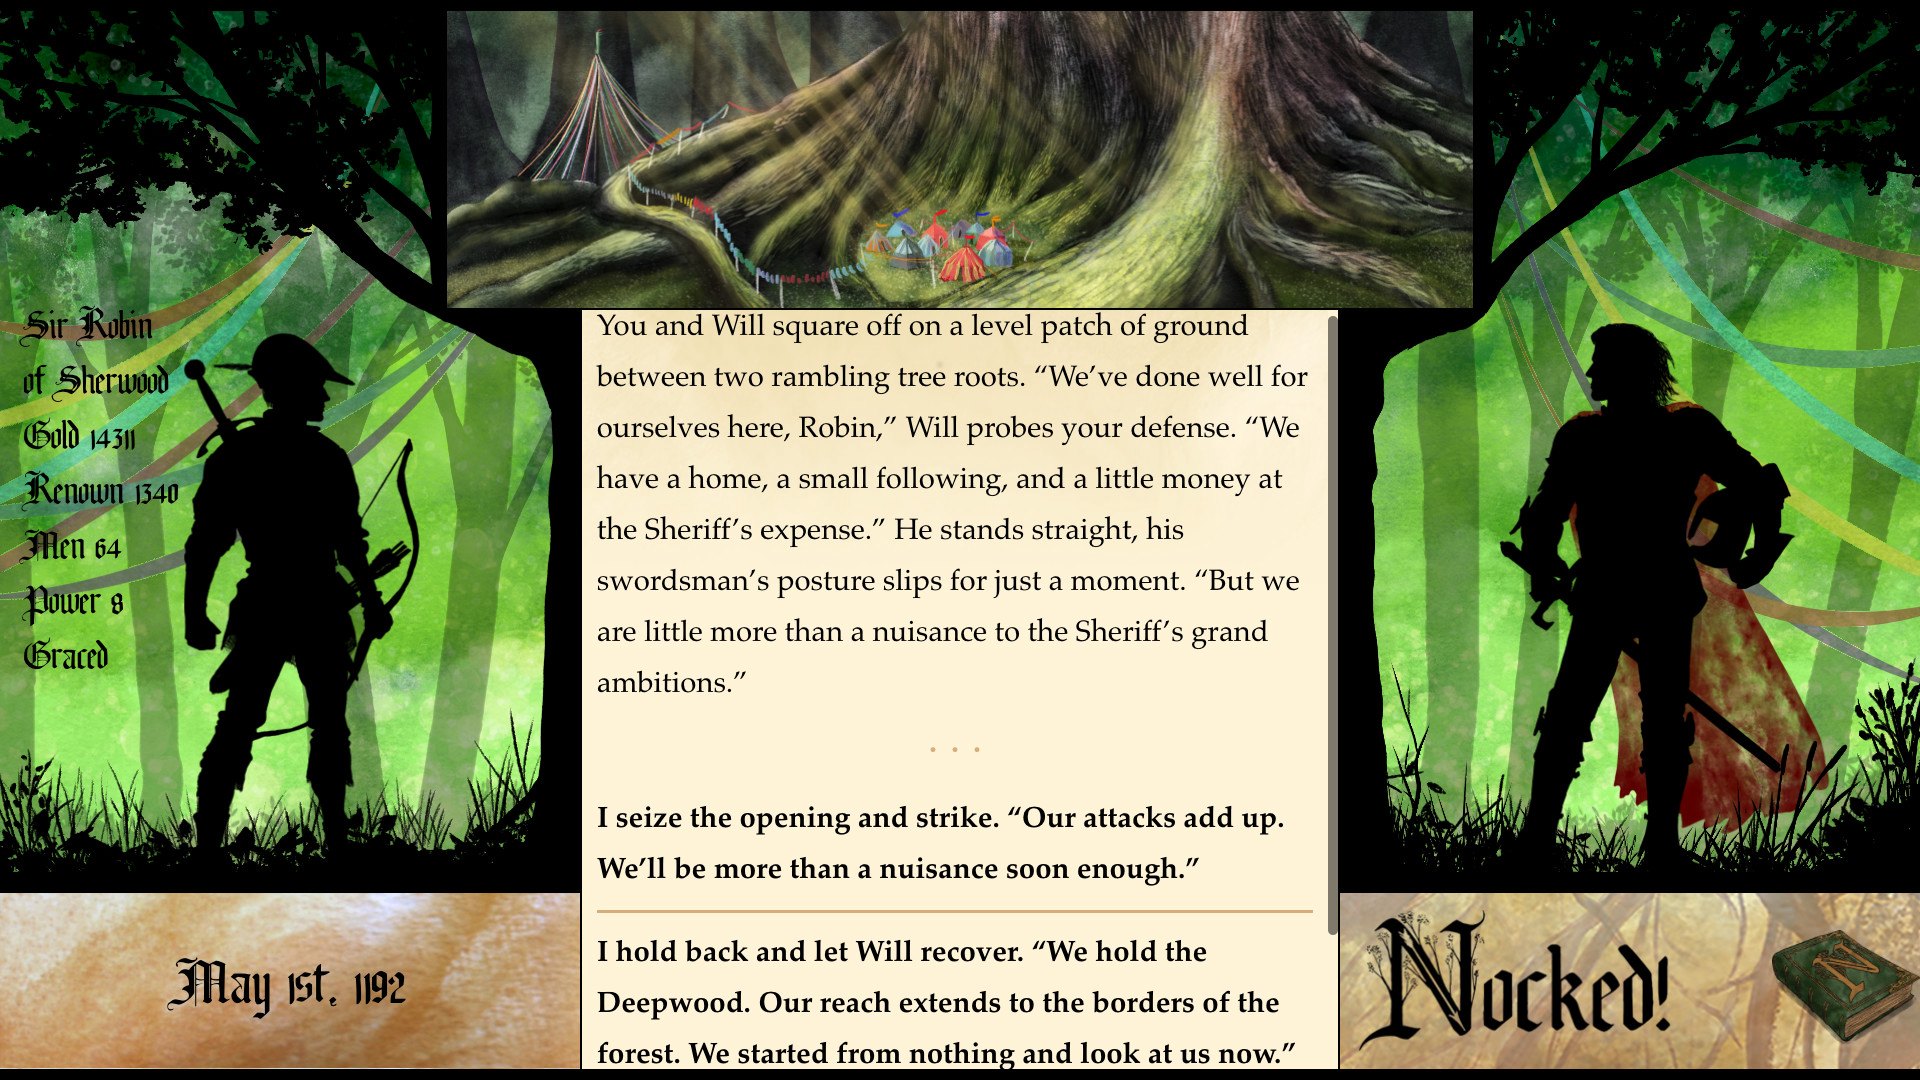 Nocked! True Tales of Robin Hood Steam CD Key [USD 2.88]